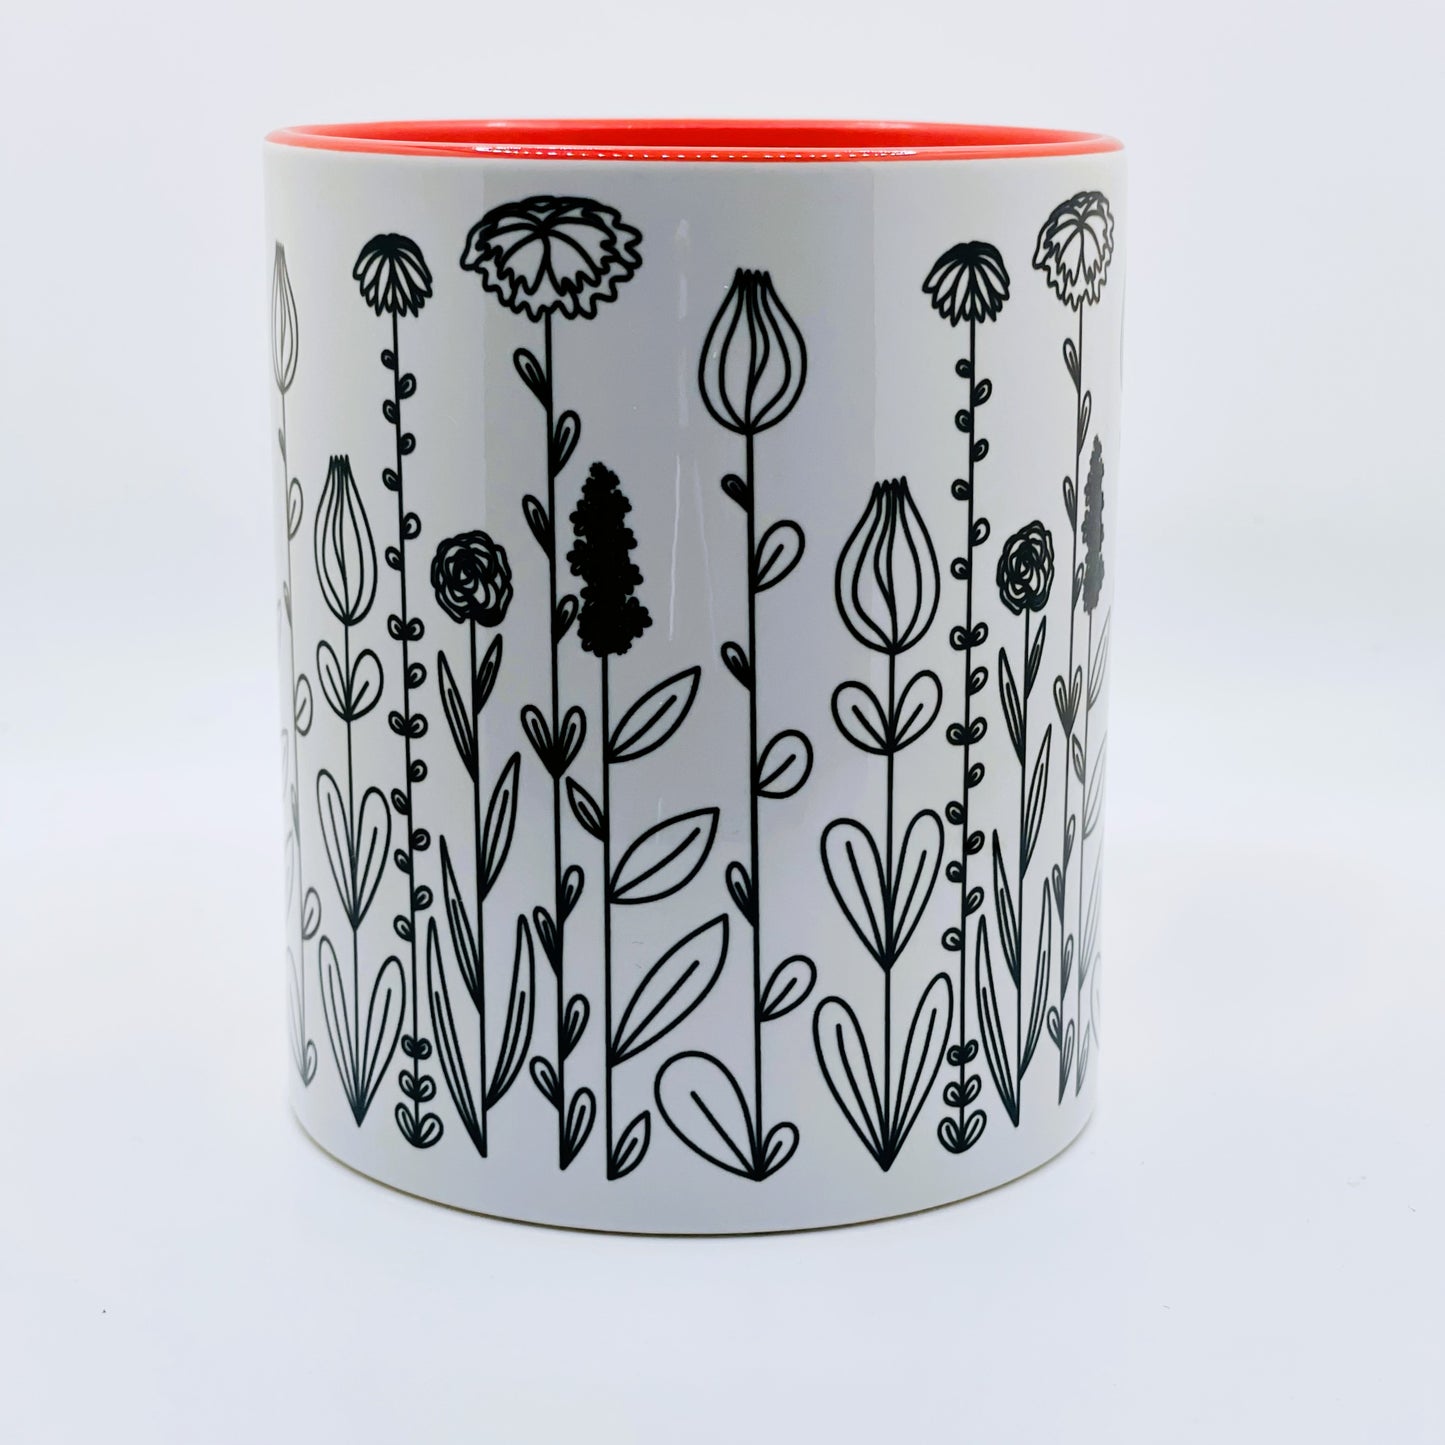 'Monochrome Meadow Flowers'© Mugs